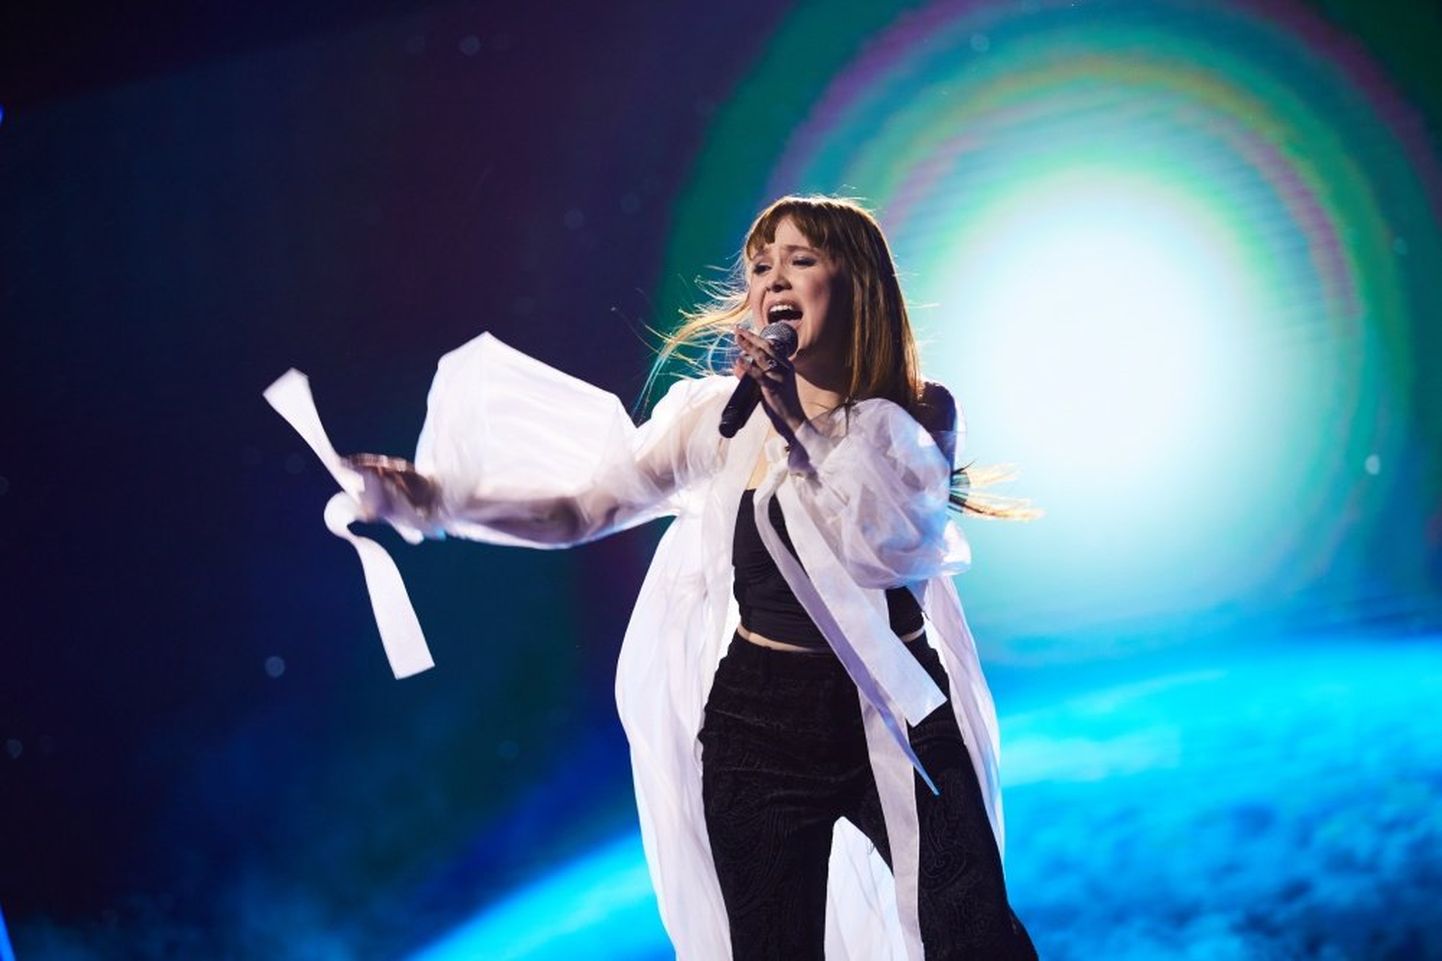 Алика Милова была фаворитом конкурса, и мощь ее выступления оценили и телезрители, и жюри.